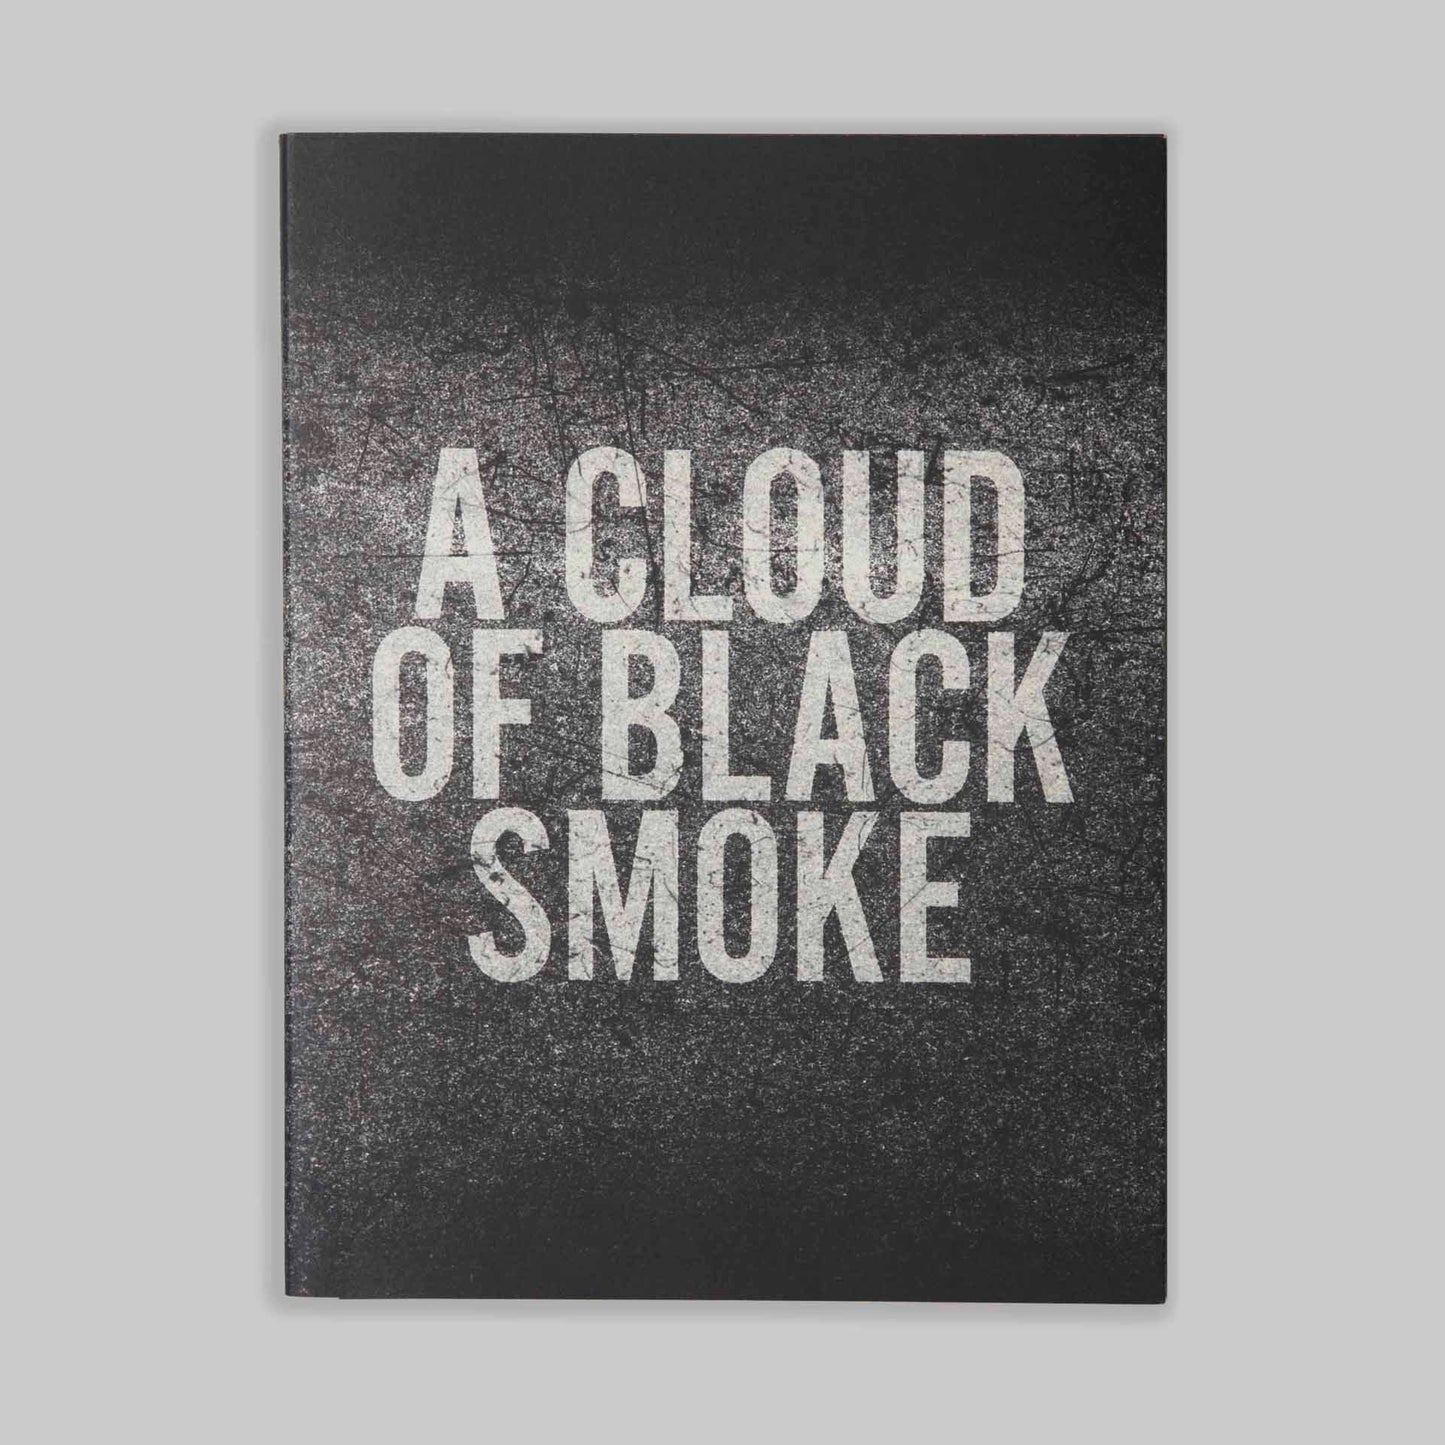 A Cloud of Black Smoke